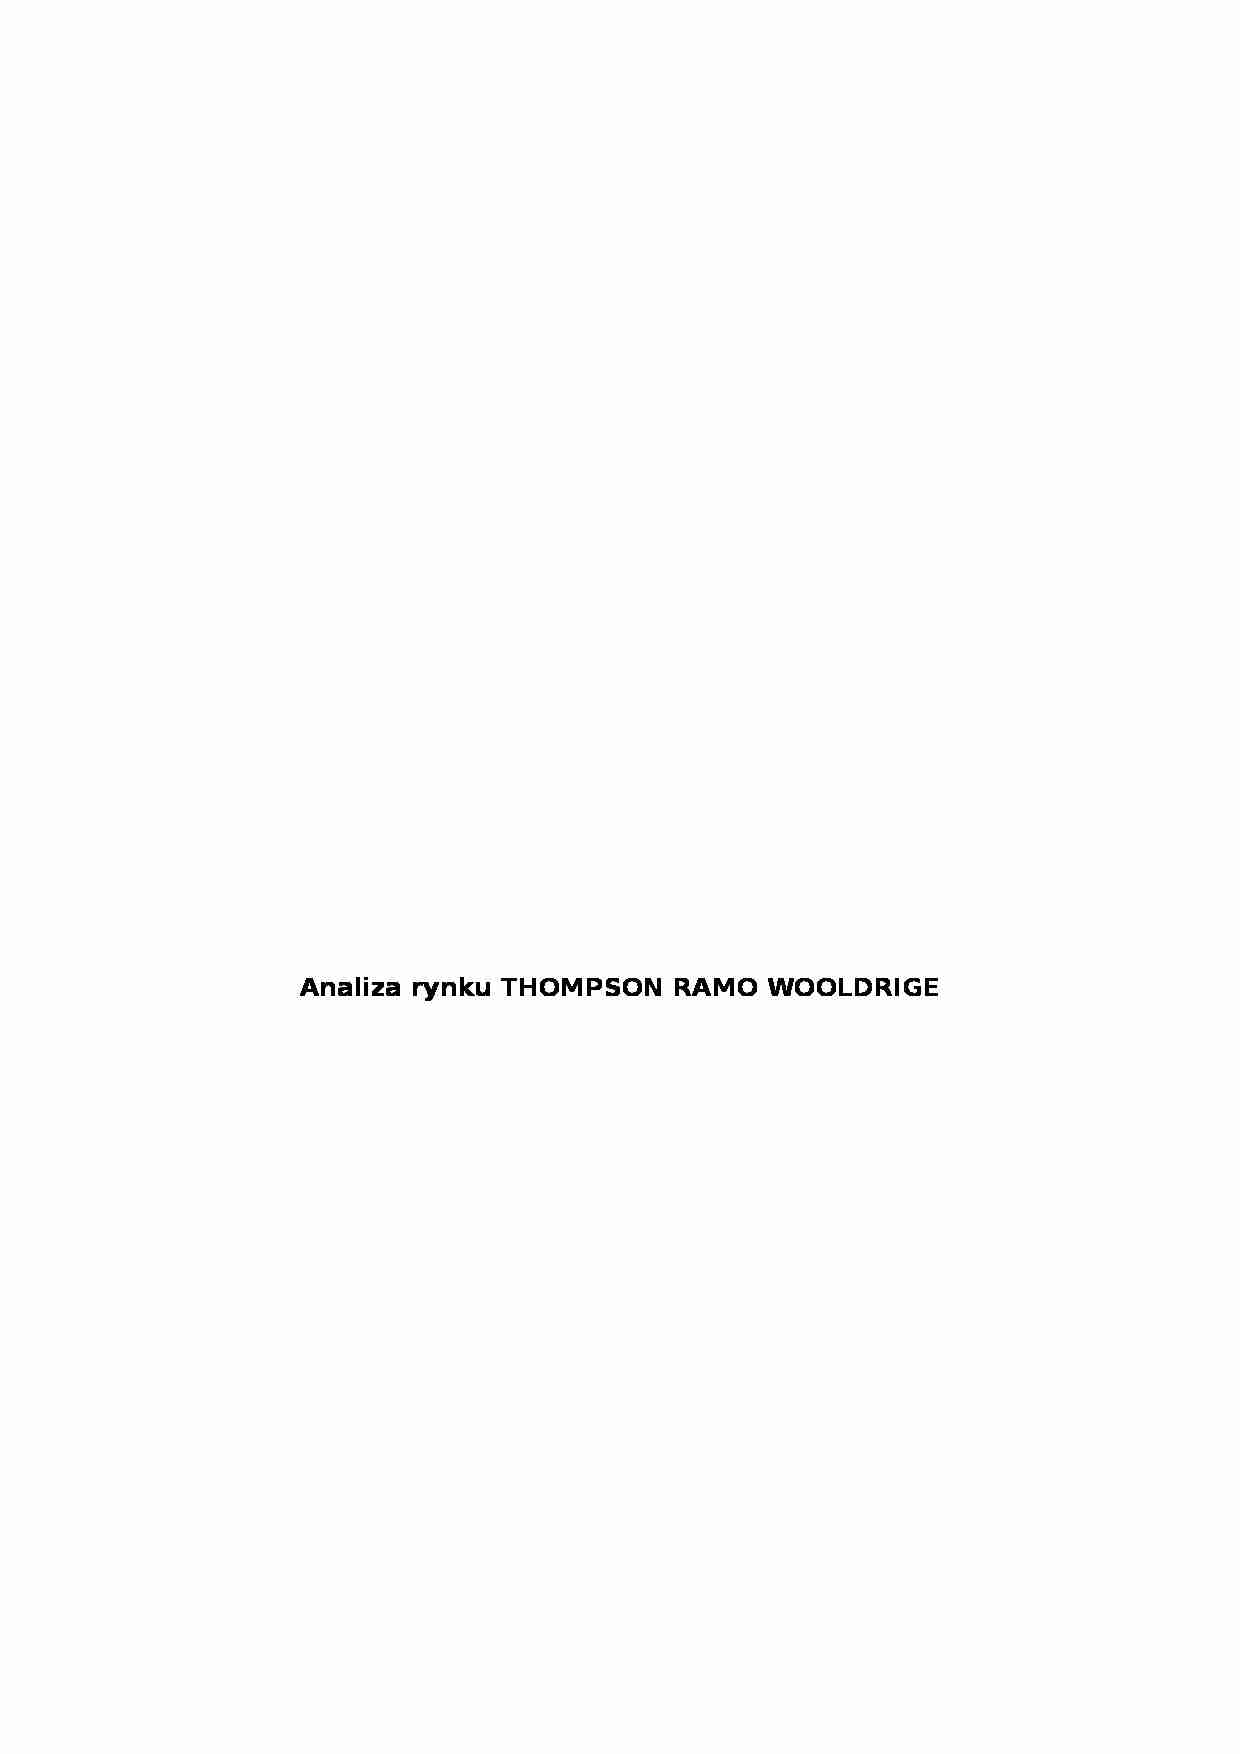 Analiza rynku THOMPSON RAMO WOOLDRIGE - strona 1